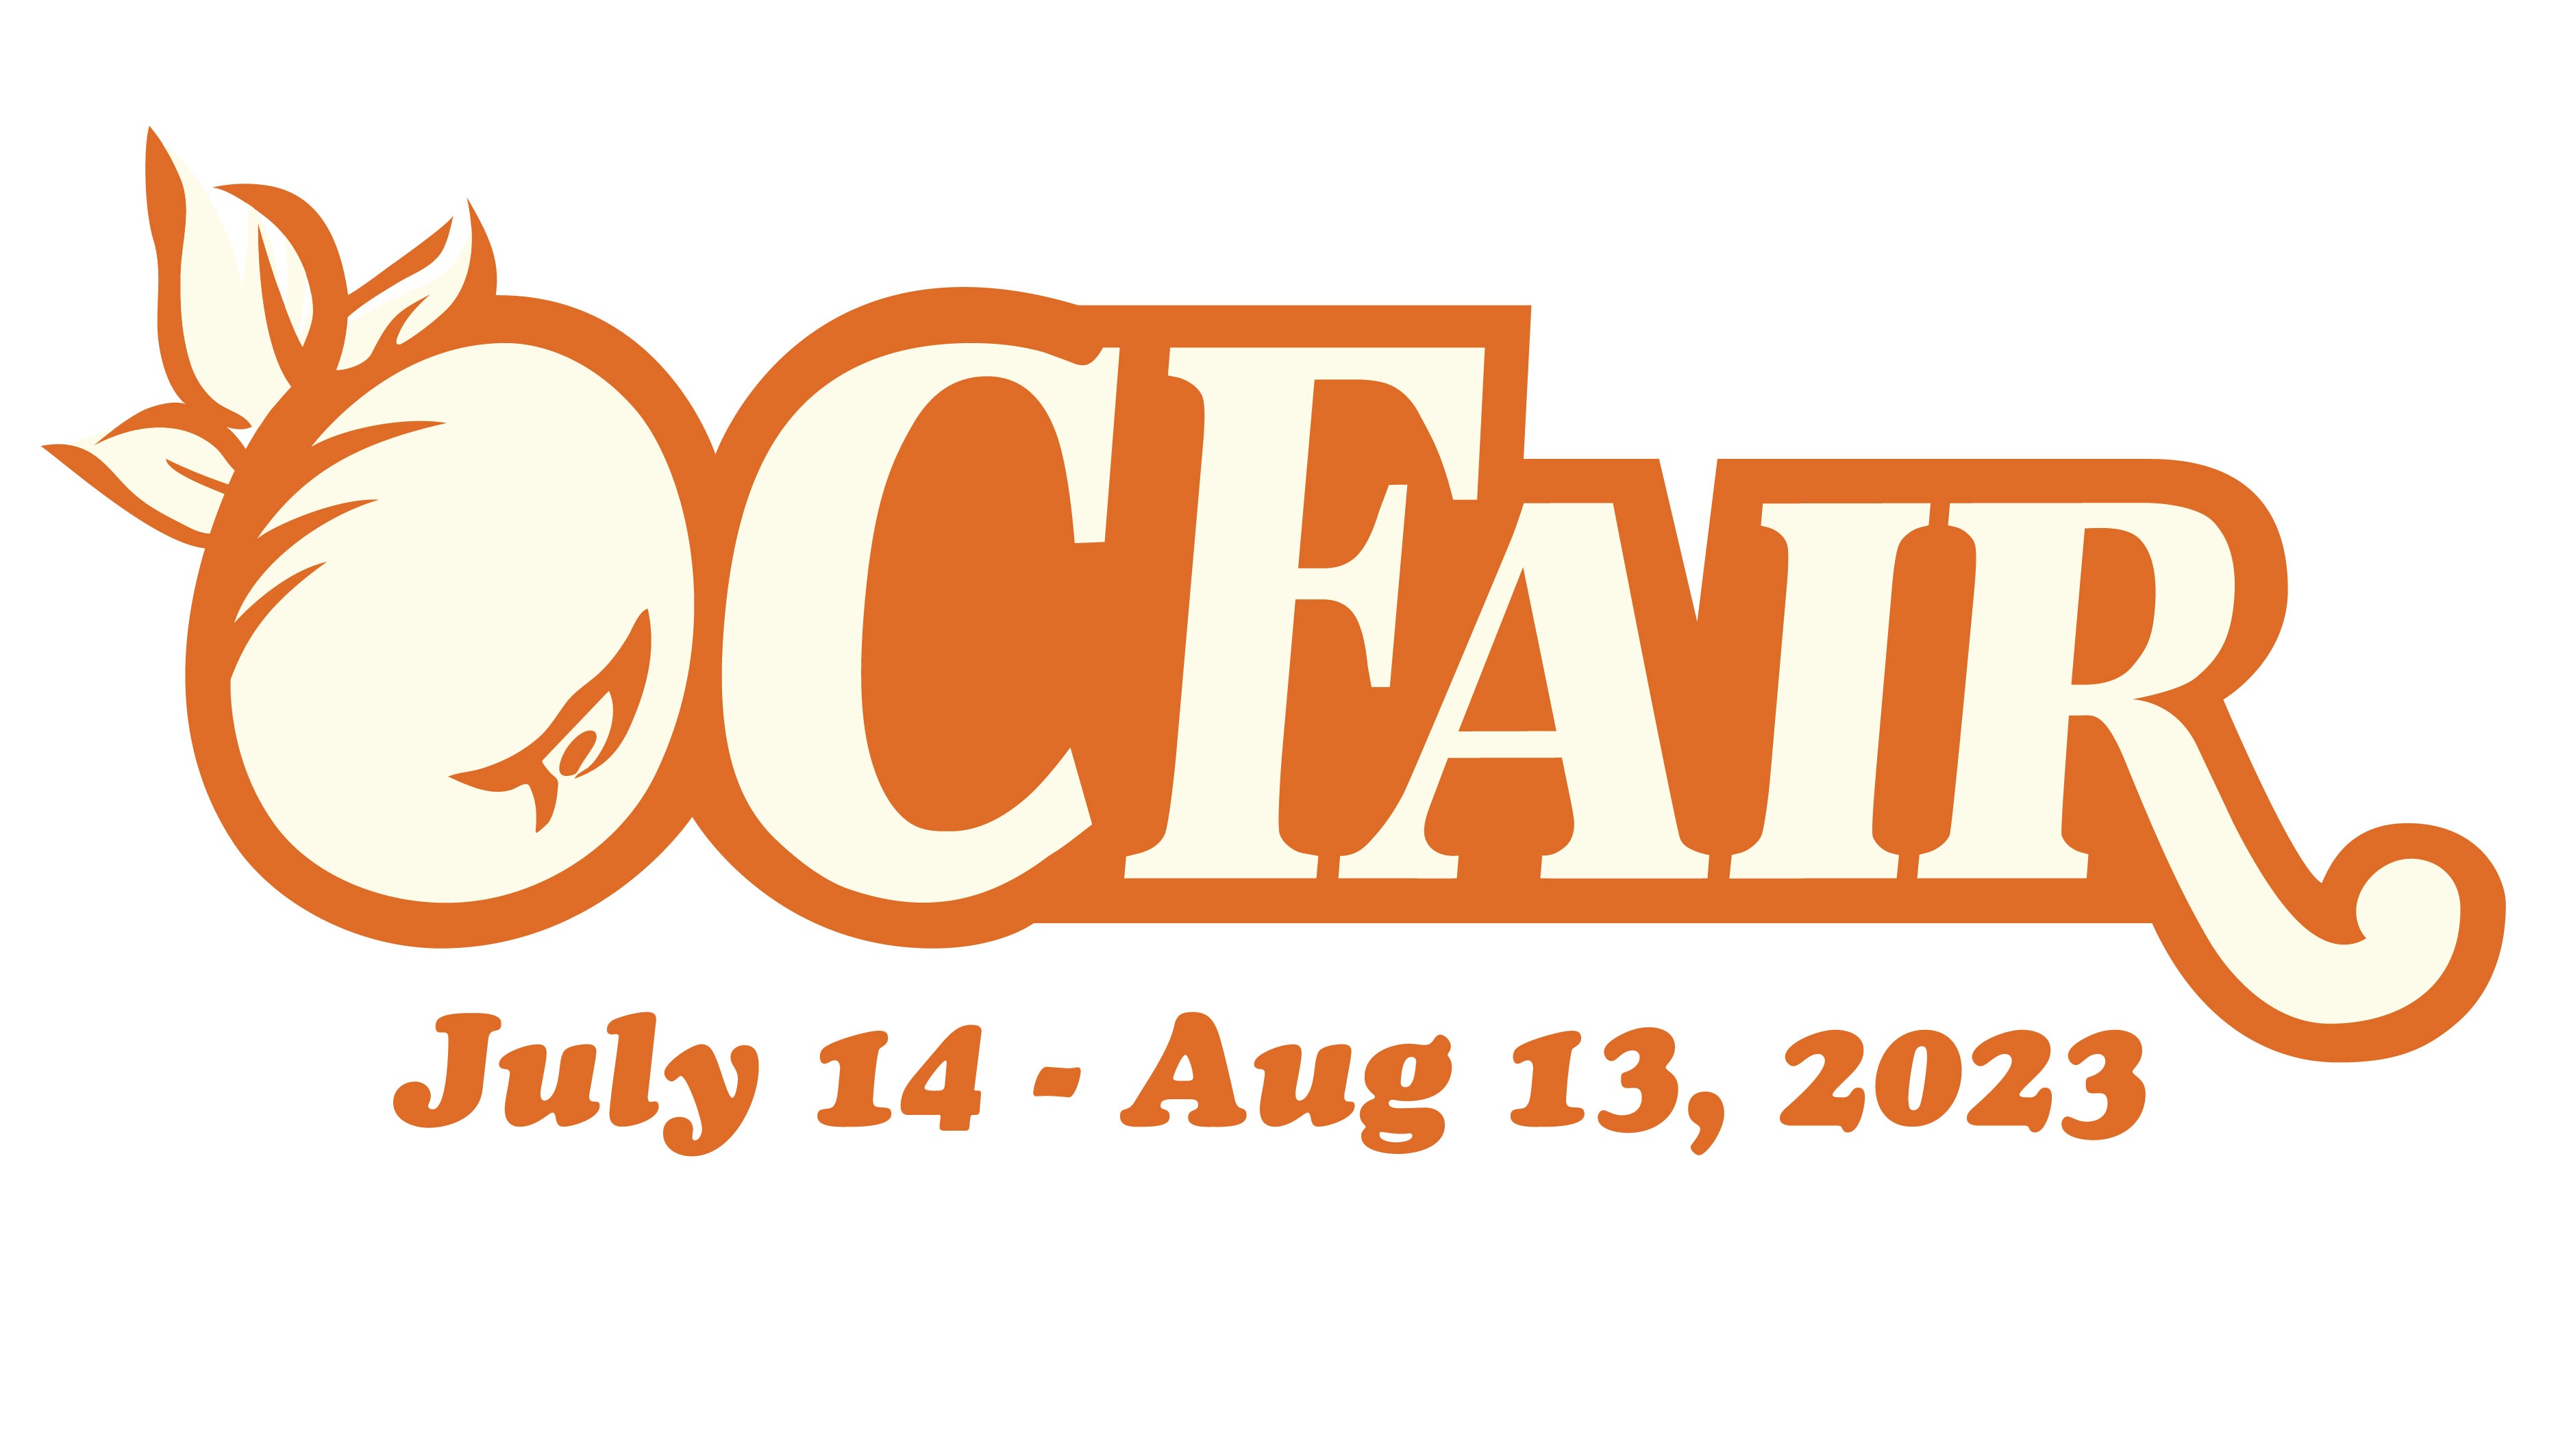 OC Fair & Event Center 2023 show schedule & venue information Live